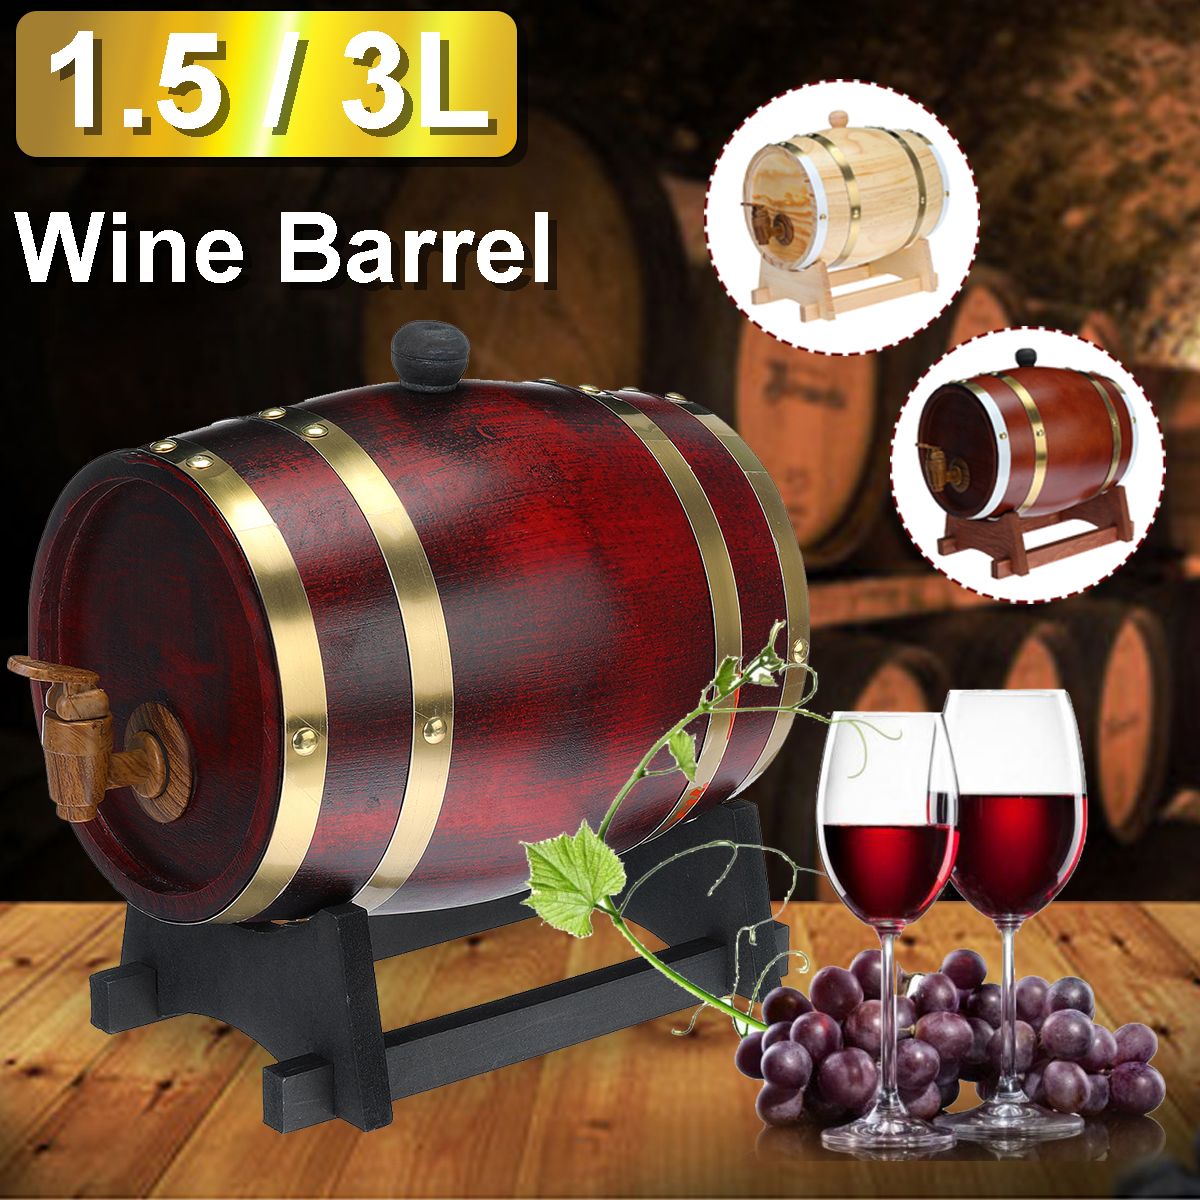 153L-Wood-Barrel-Oak-Brewing-Vintage-Keg-Wines-Whiskey-Home-Storage-Holder-1744767